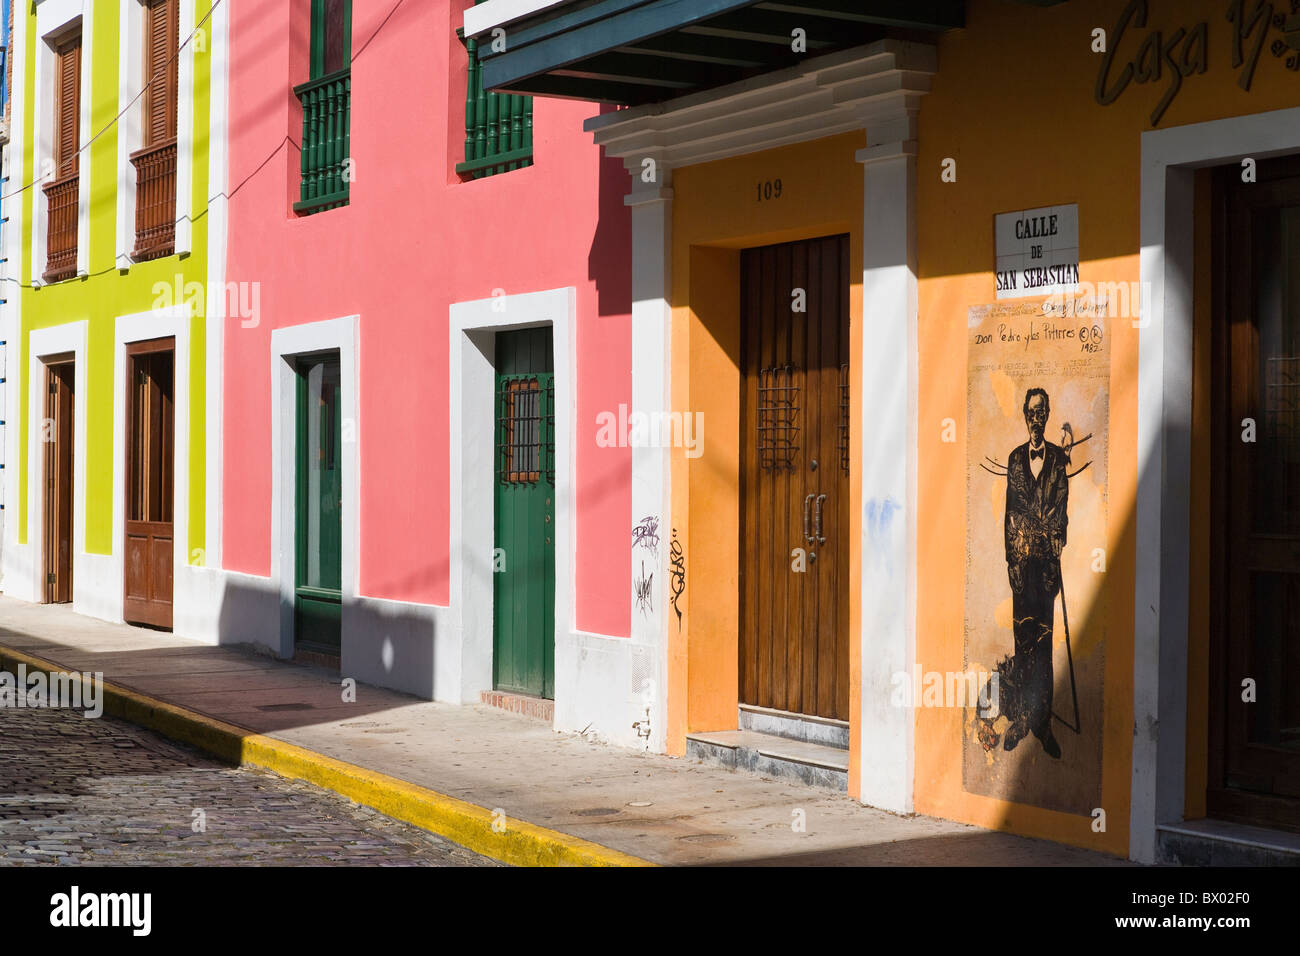 Calle de San Sebastian, Old San Juan, Puerto Rico Stock Photo